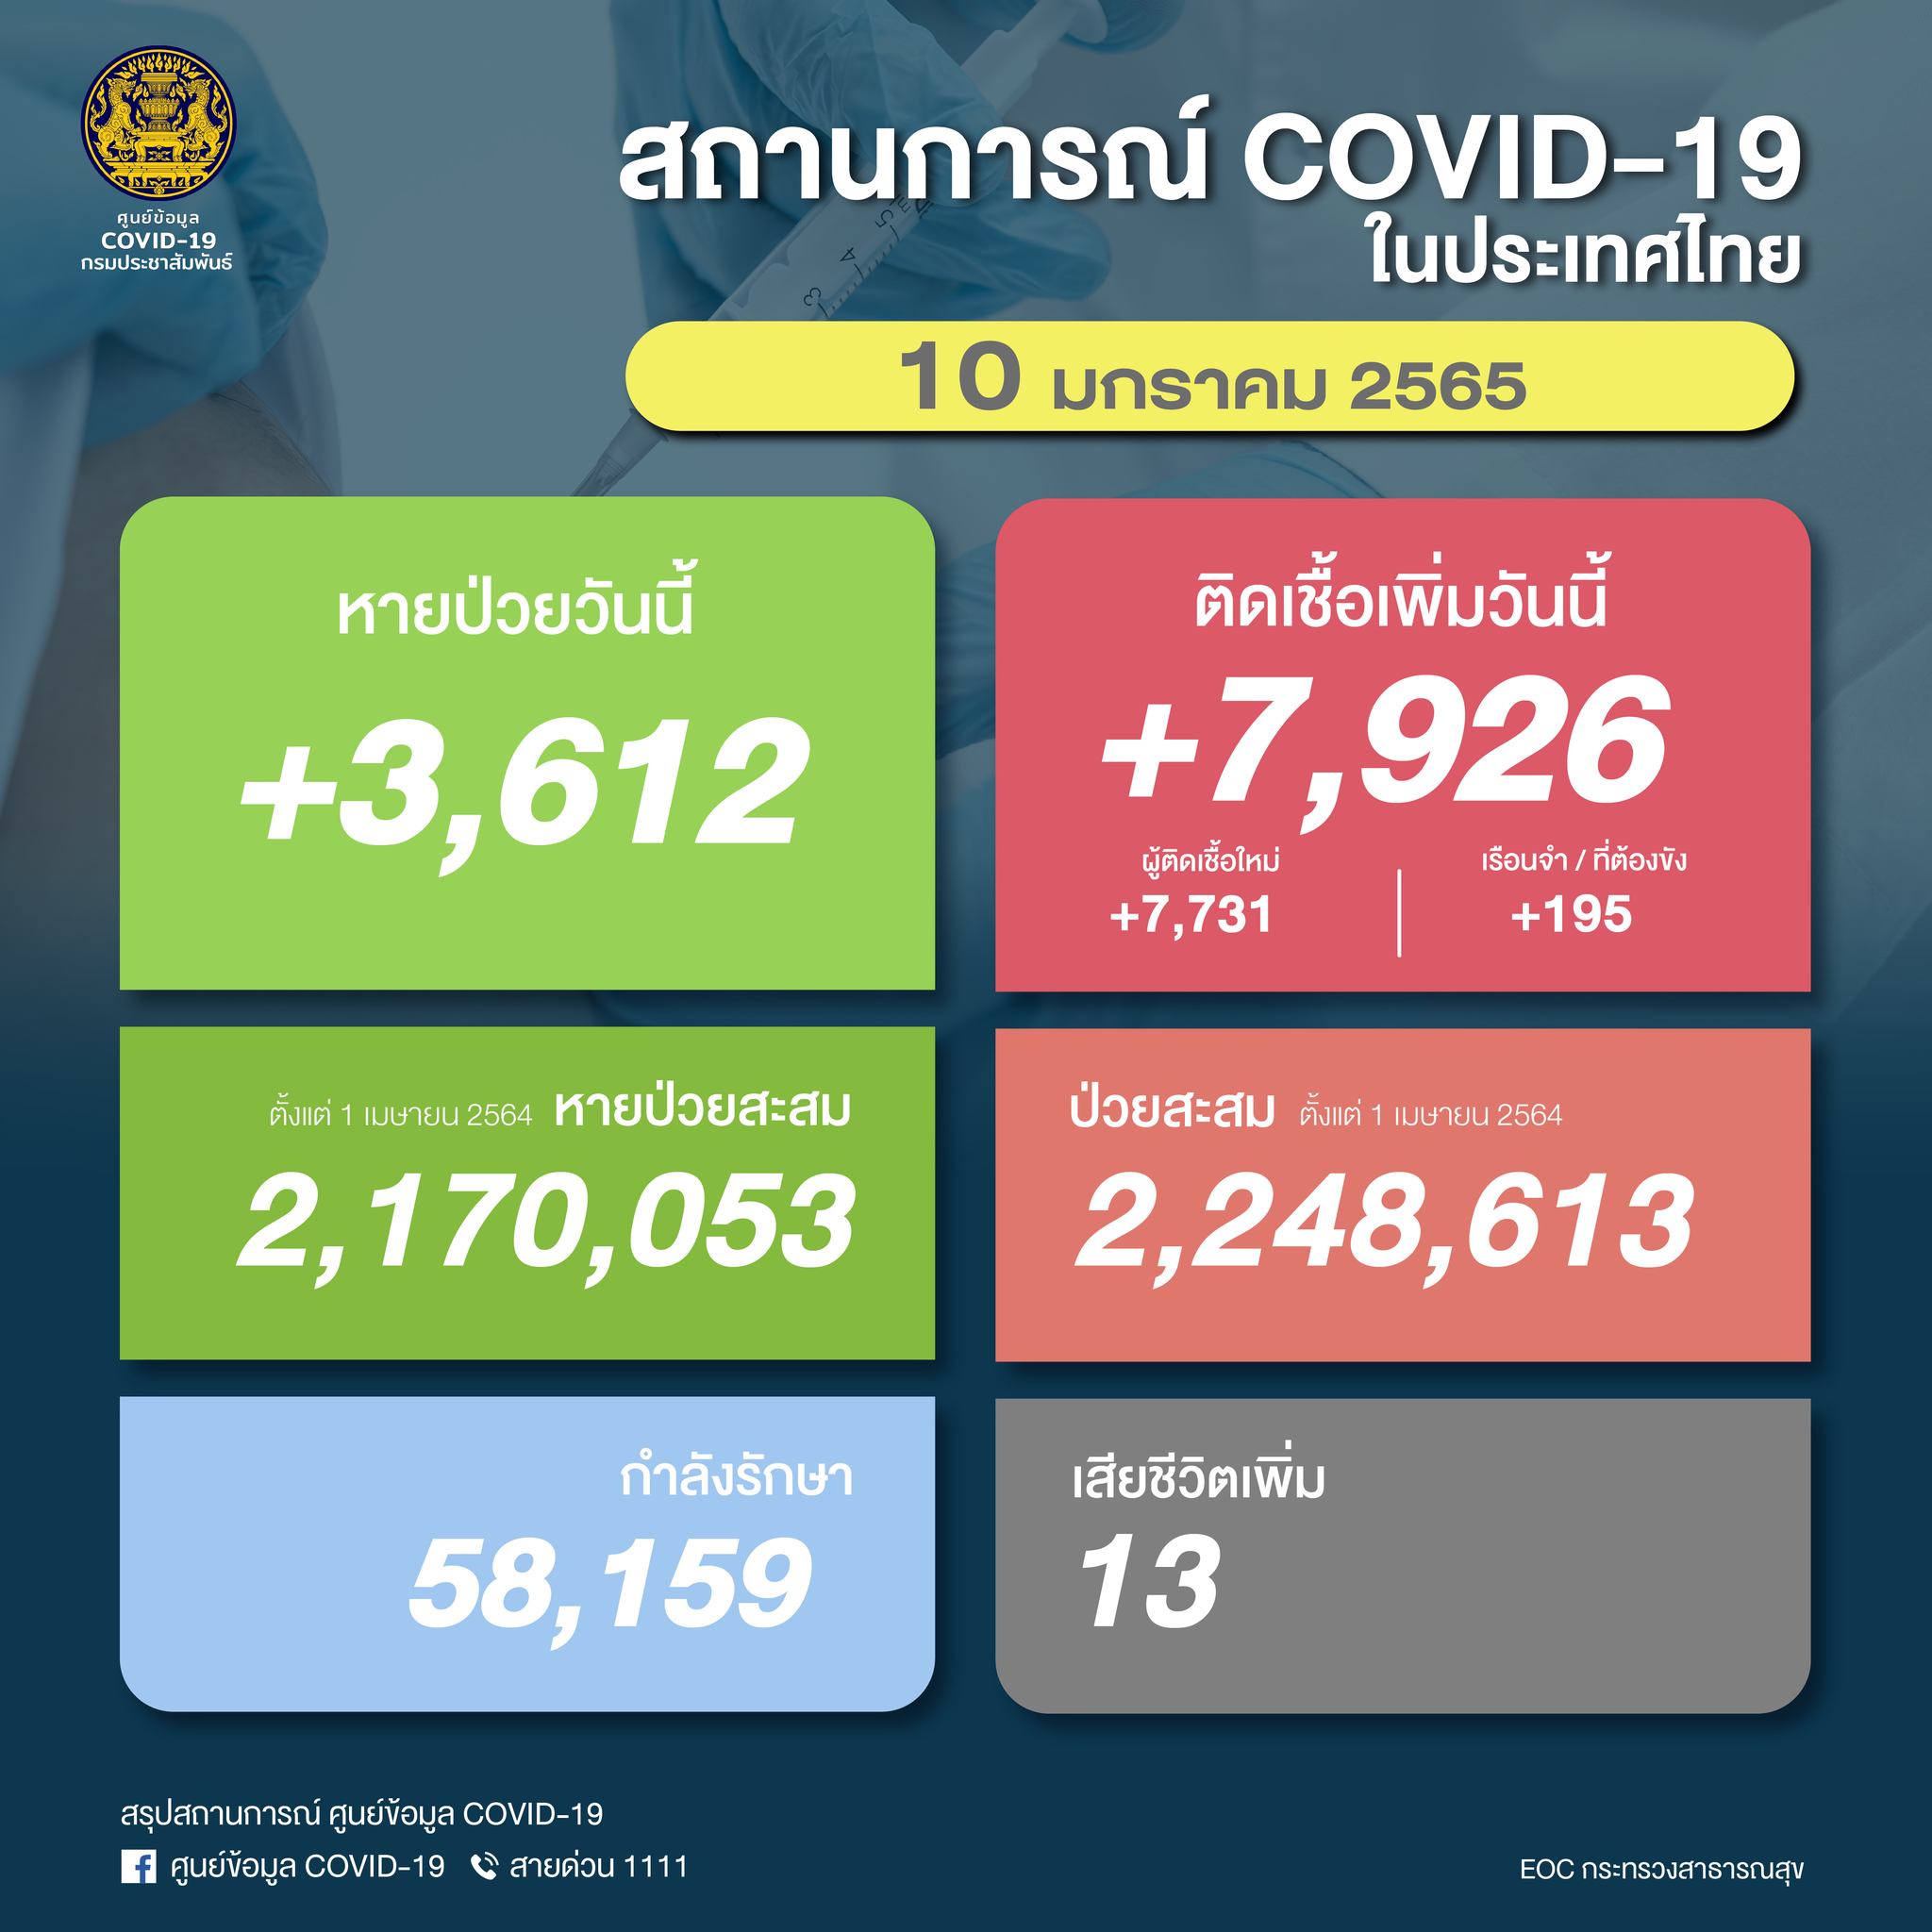 ยอดโควิดในไทยวันนี้ ติดเชื้อรายใหม่เพิ่มขึ้น 7,926 ราย เสียชีวิต 13 ราย